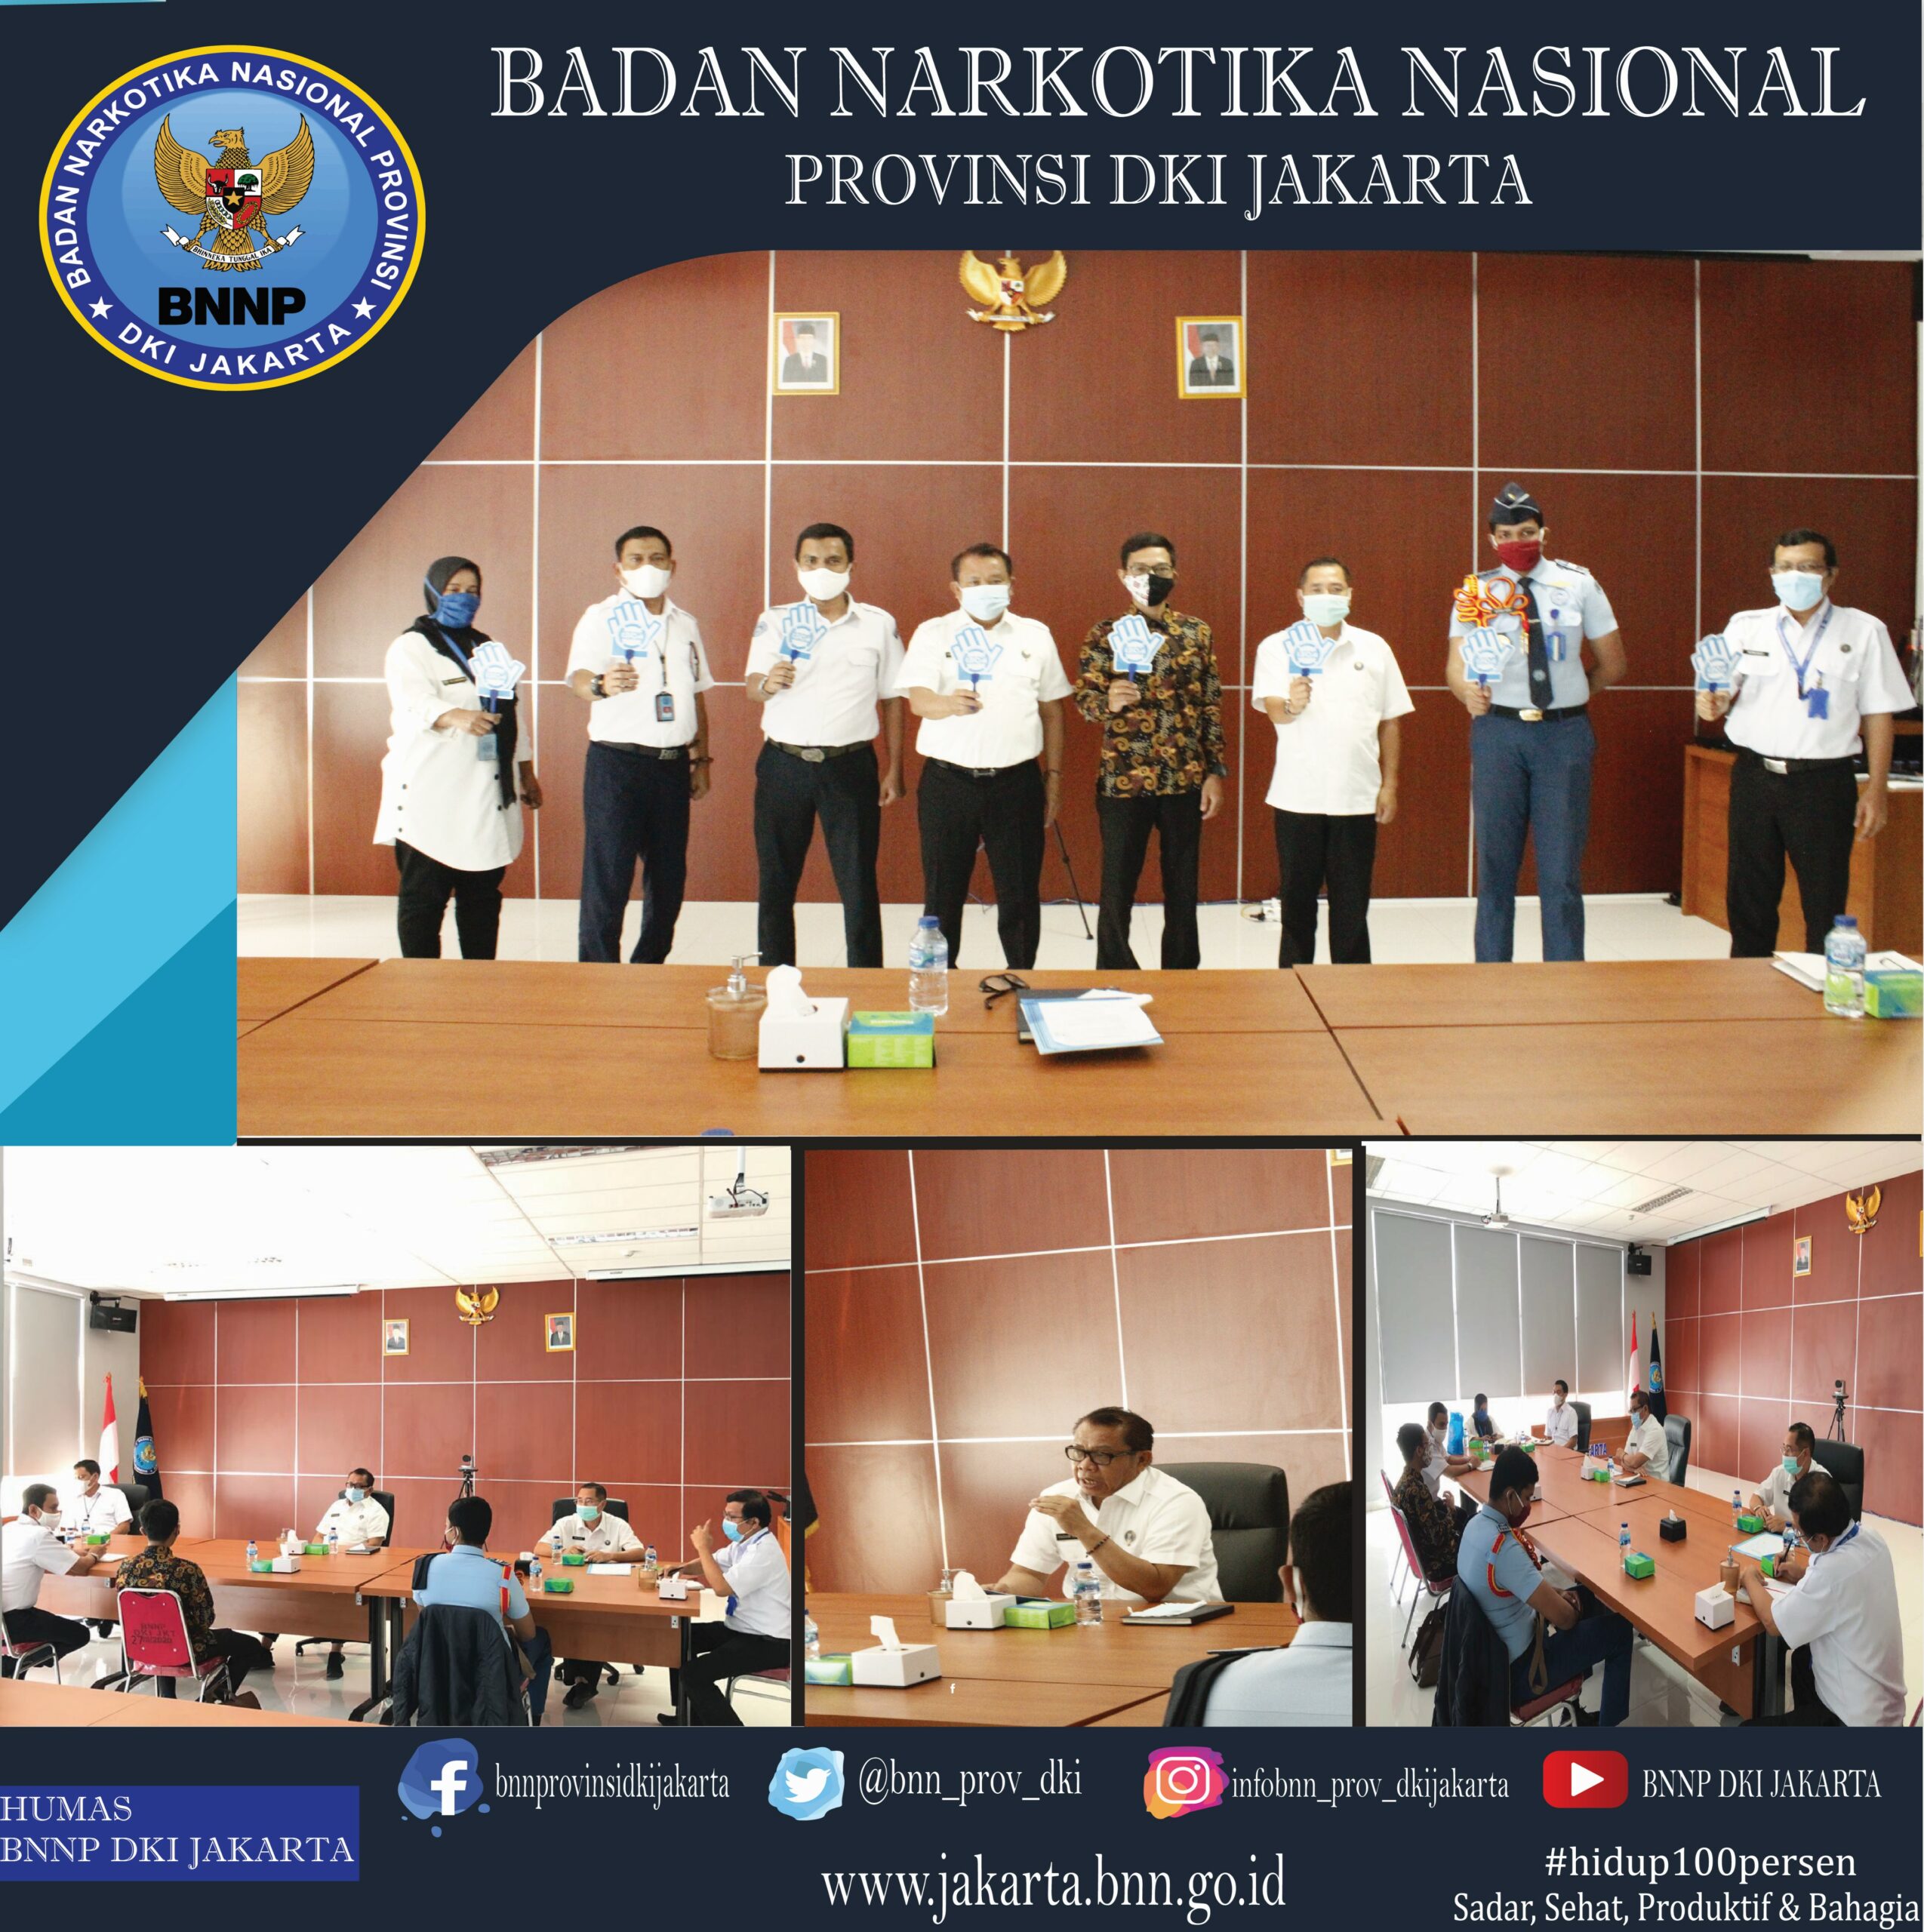 Audiensi dari Sekolah Tinggi Penerbangan (STP) Aviasi kepada Kepala BNNP DKI Jakarta.